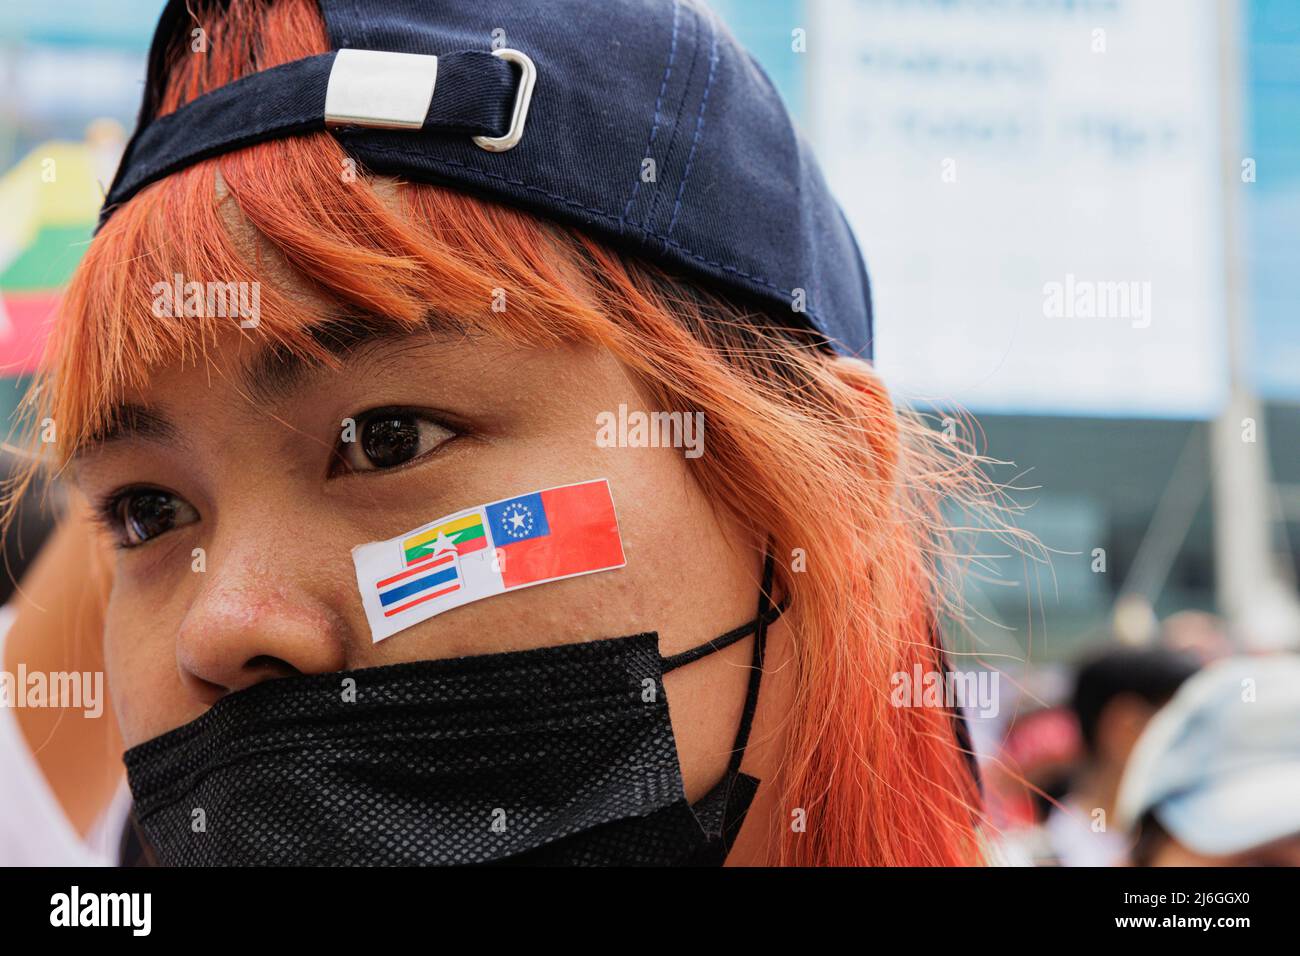 Während der Demonstration wurde die in Myanmar geplate Demonstratorin mit einem Aufkleber im Gesicht gesehen. Die Arbeitergewerkschaft veranstaltete am Tag der Arbeit in Bangkok, Thailand, eine Parade. An der Parade nahmen verschiedene Gruppen Teil, darunter die thailändische Arbeitergruppe, die myanmarische Arbeitergruppe und die pro-demokratische Gruppe. Sie versammelten sich an der Ratchaprosong Road und marschierten dann zur Kreuzung Pathumwan, Demonstranten forderten Wohlfahrt, faire Zinszahlungen und auch Demokratie (einschließlich Thailand und Myanmar). (Foto von Varuth Pongsapipatt / SOPA Images/Sipa USA) Stockfoto